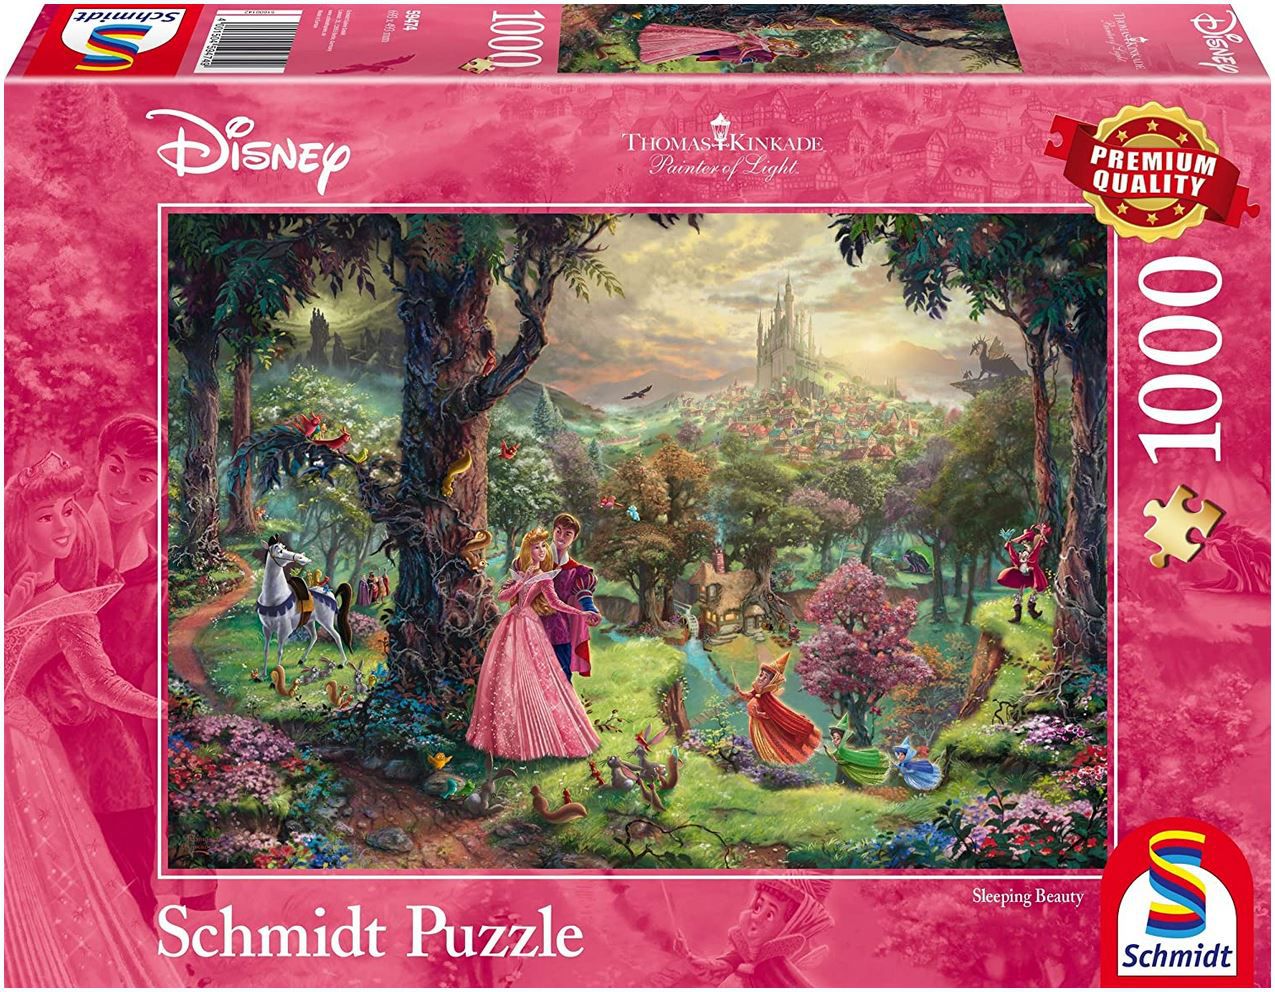 Schmidt Spiele 59474 Disneys Dornröschen, 1.000 Teile Puzzle für 7,64€ (statt 15€)   Prime